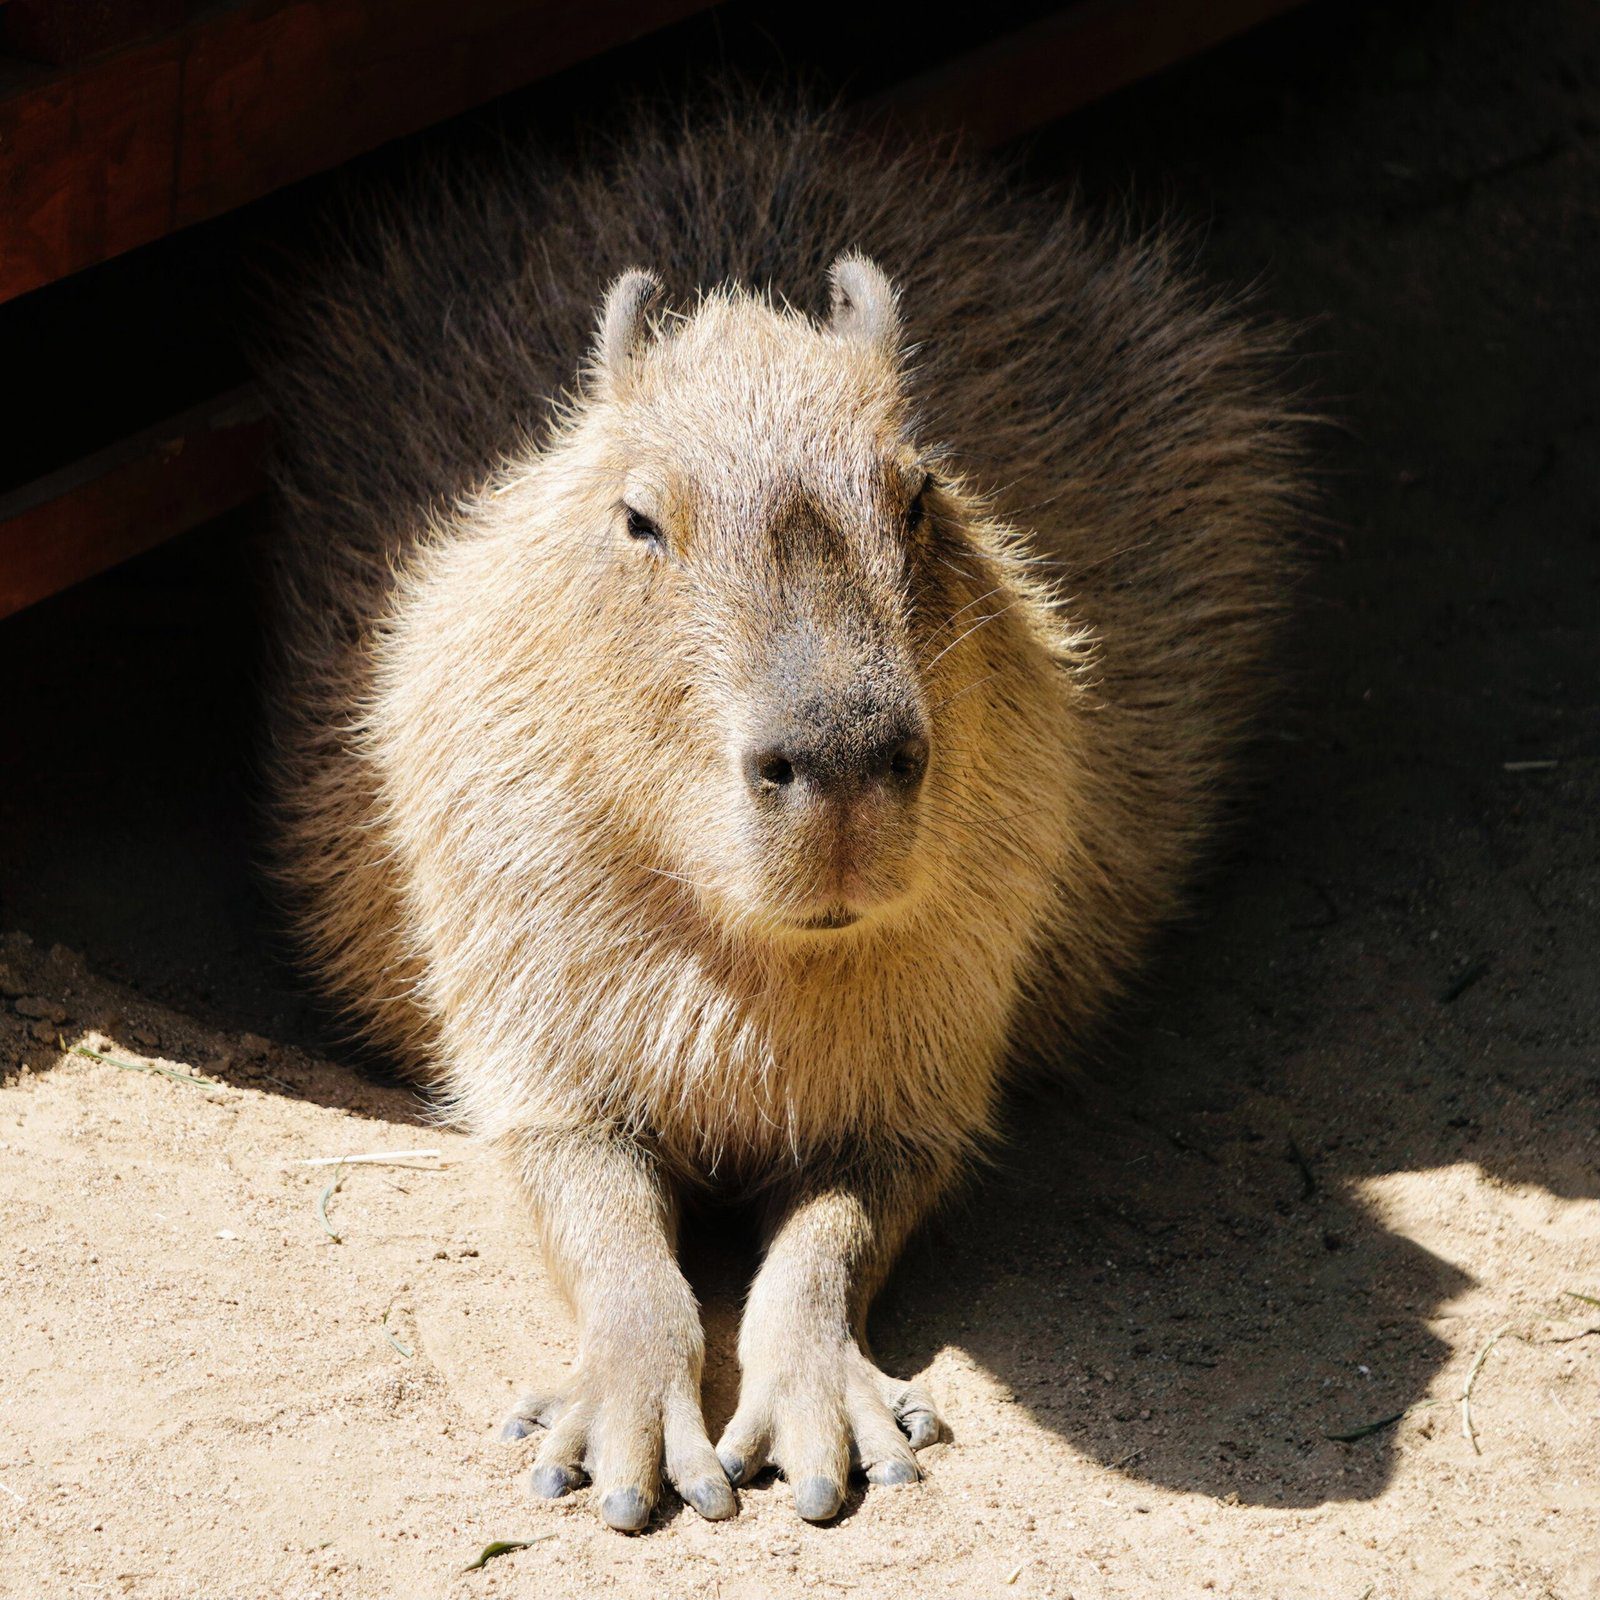 The Life of a Capybara